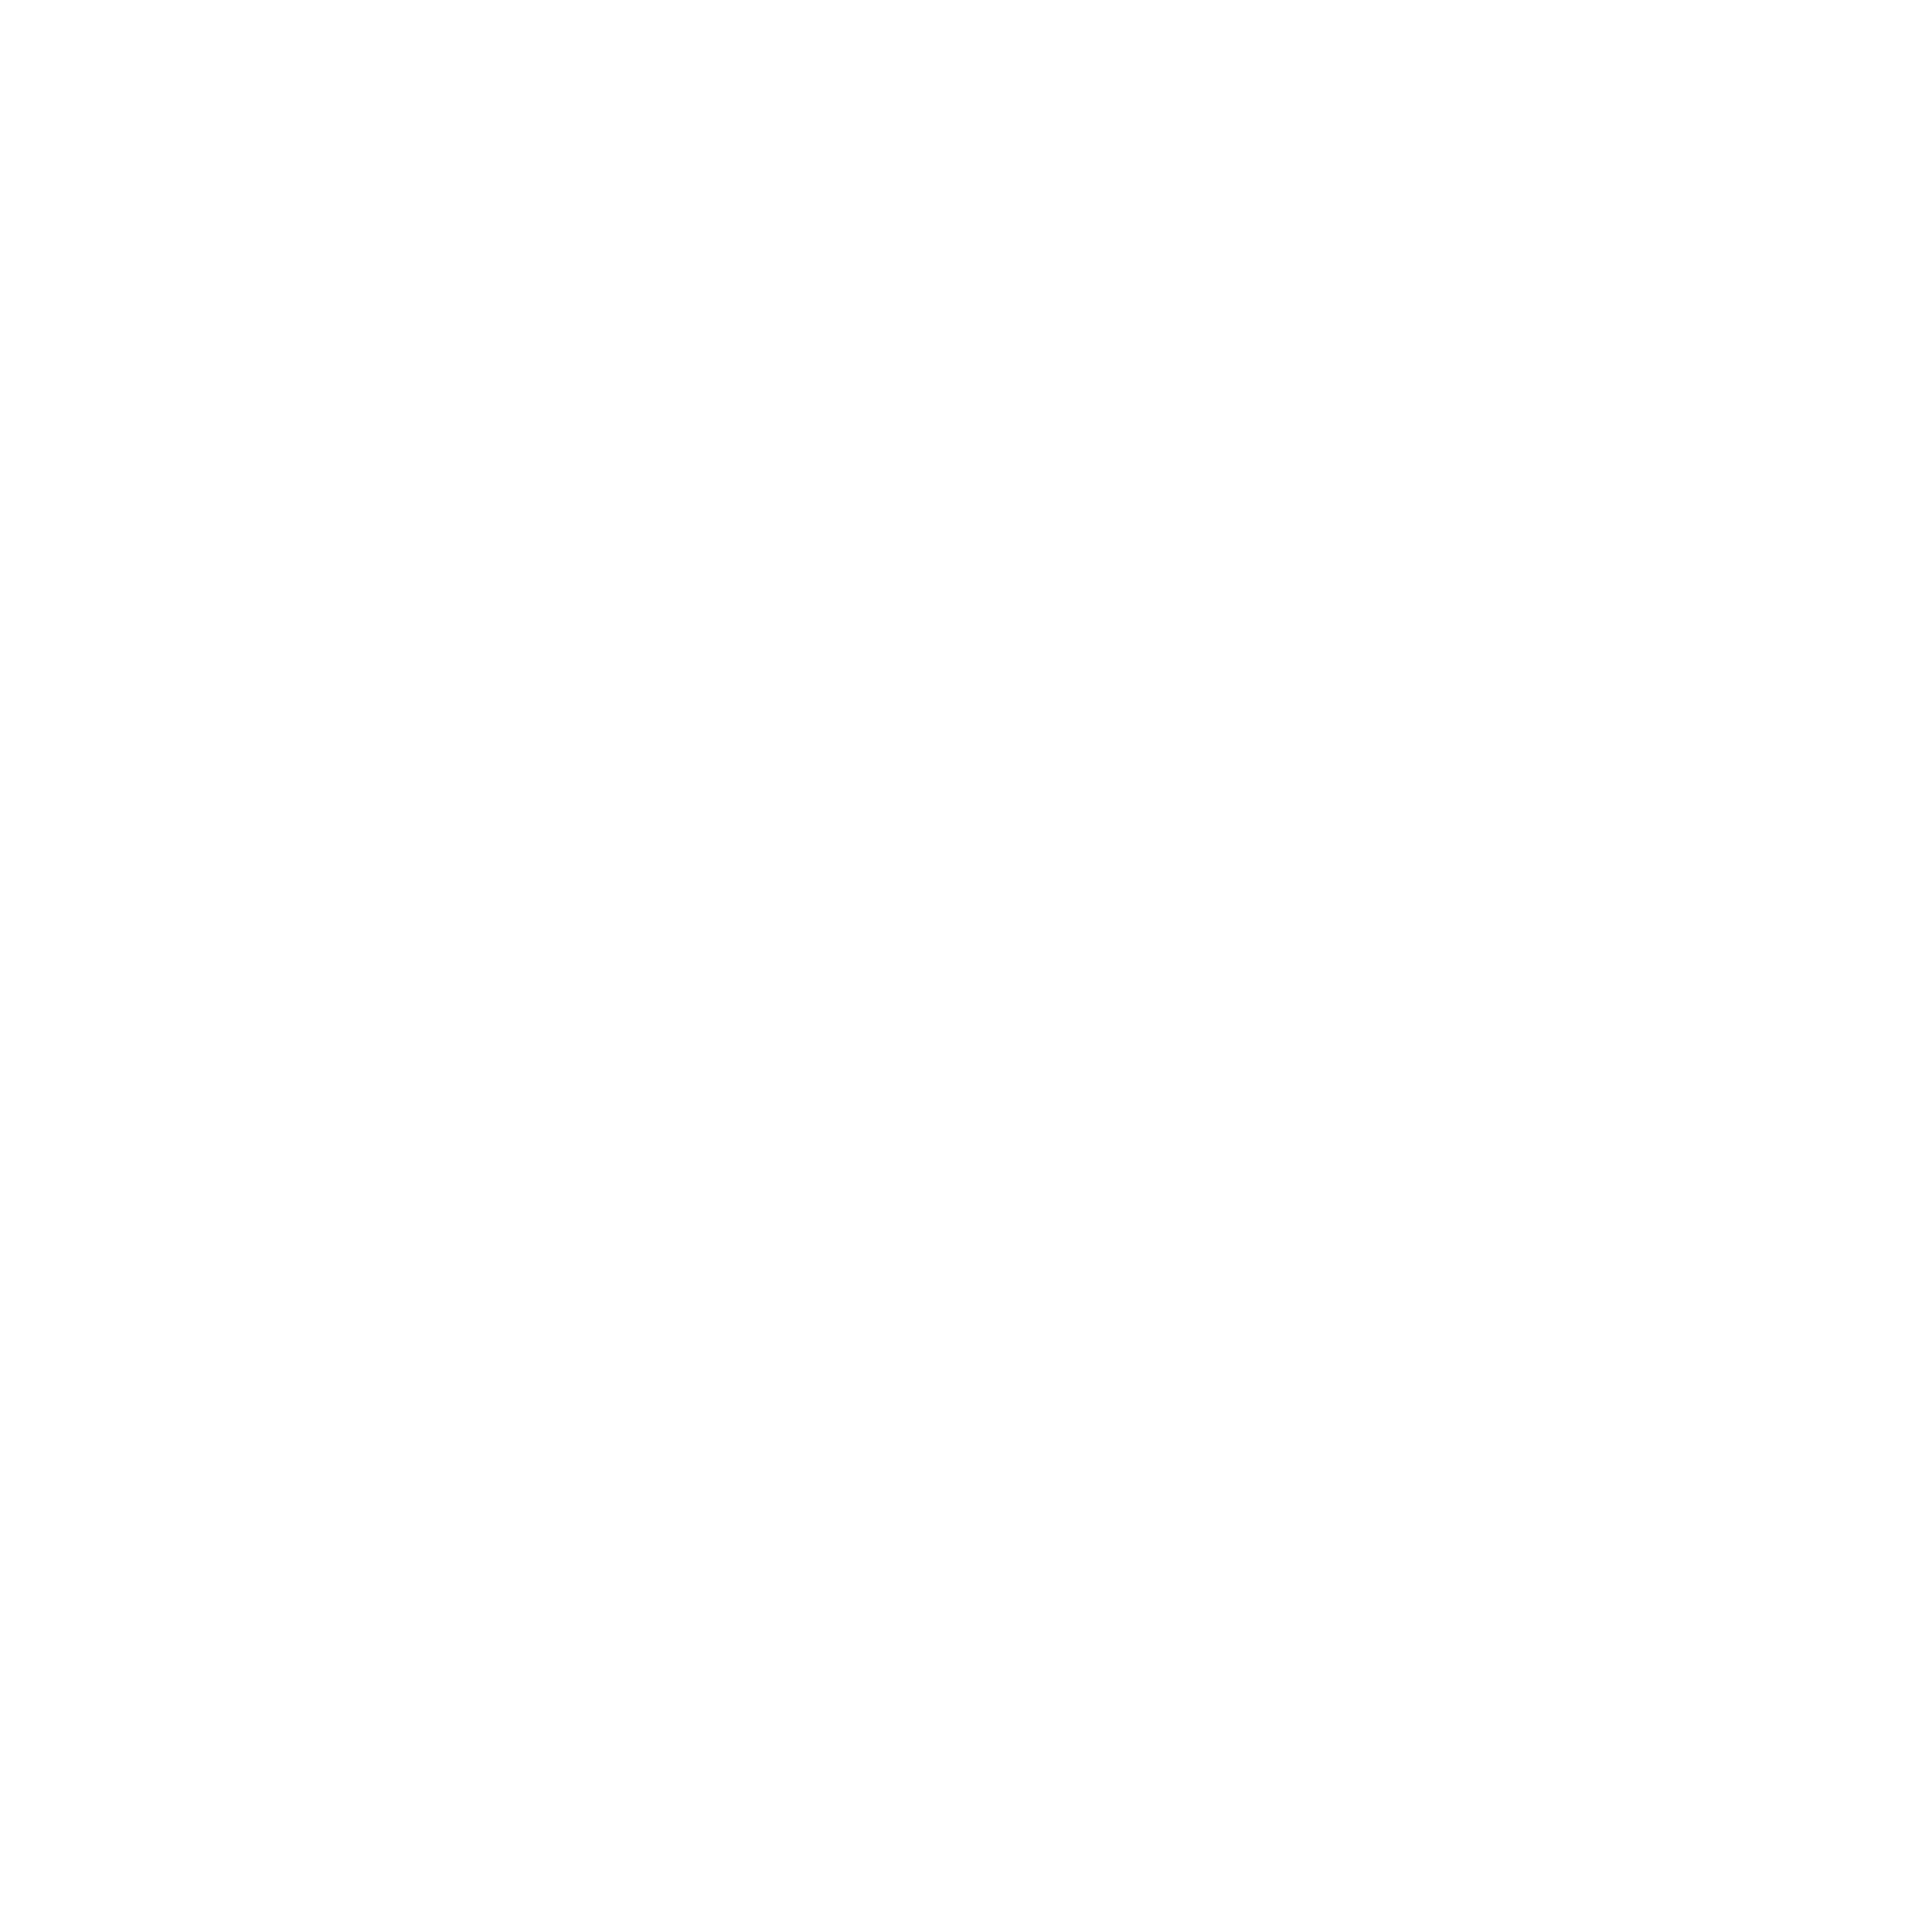 Airstream Logo - Private Bookings. Sound Cream Airstream